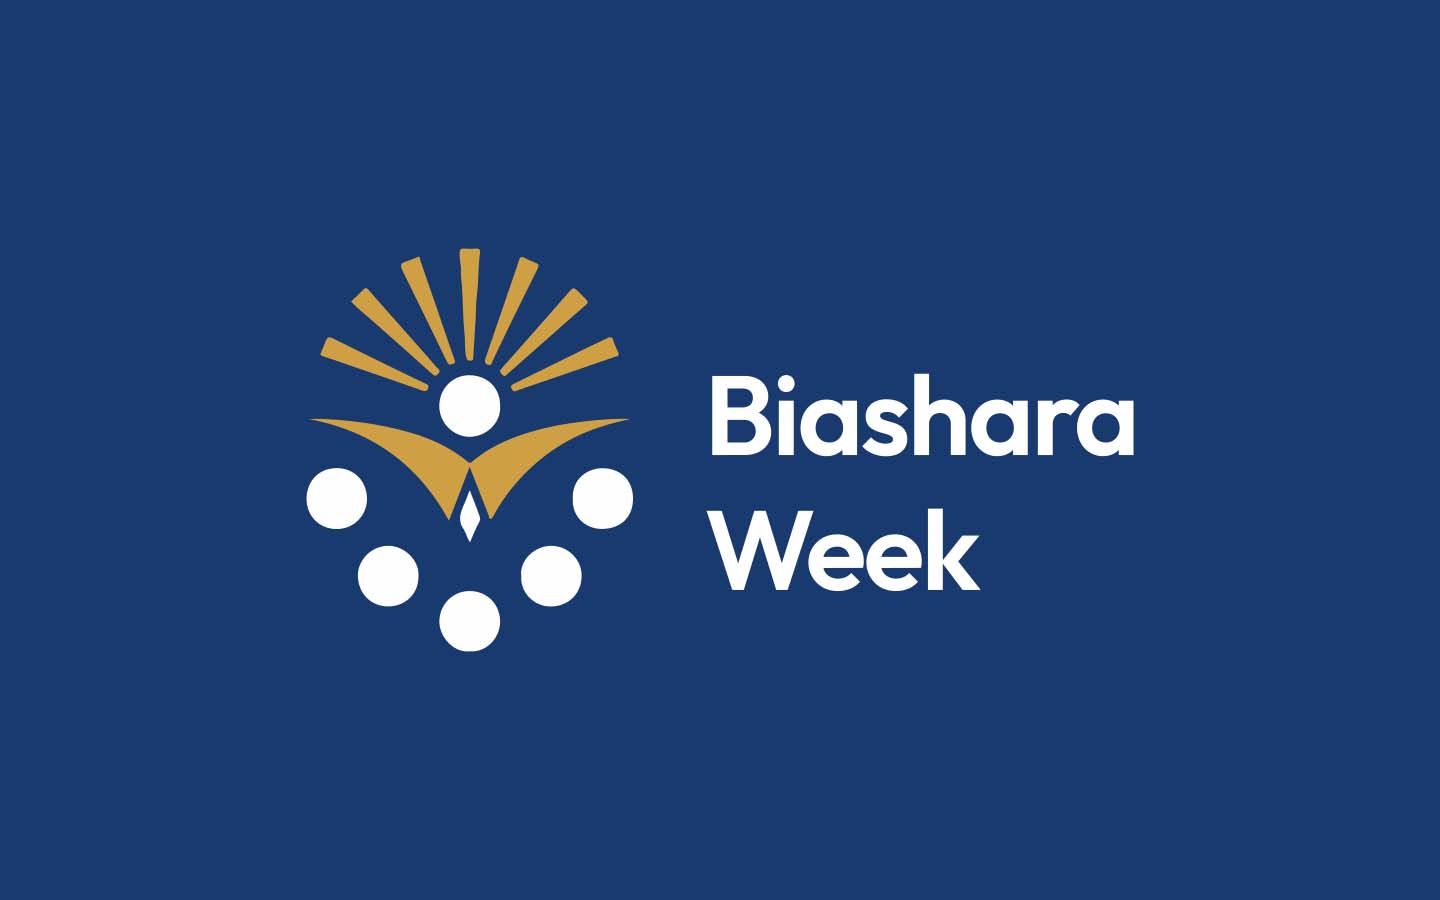 TUK Biashara Week